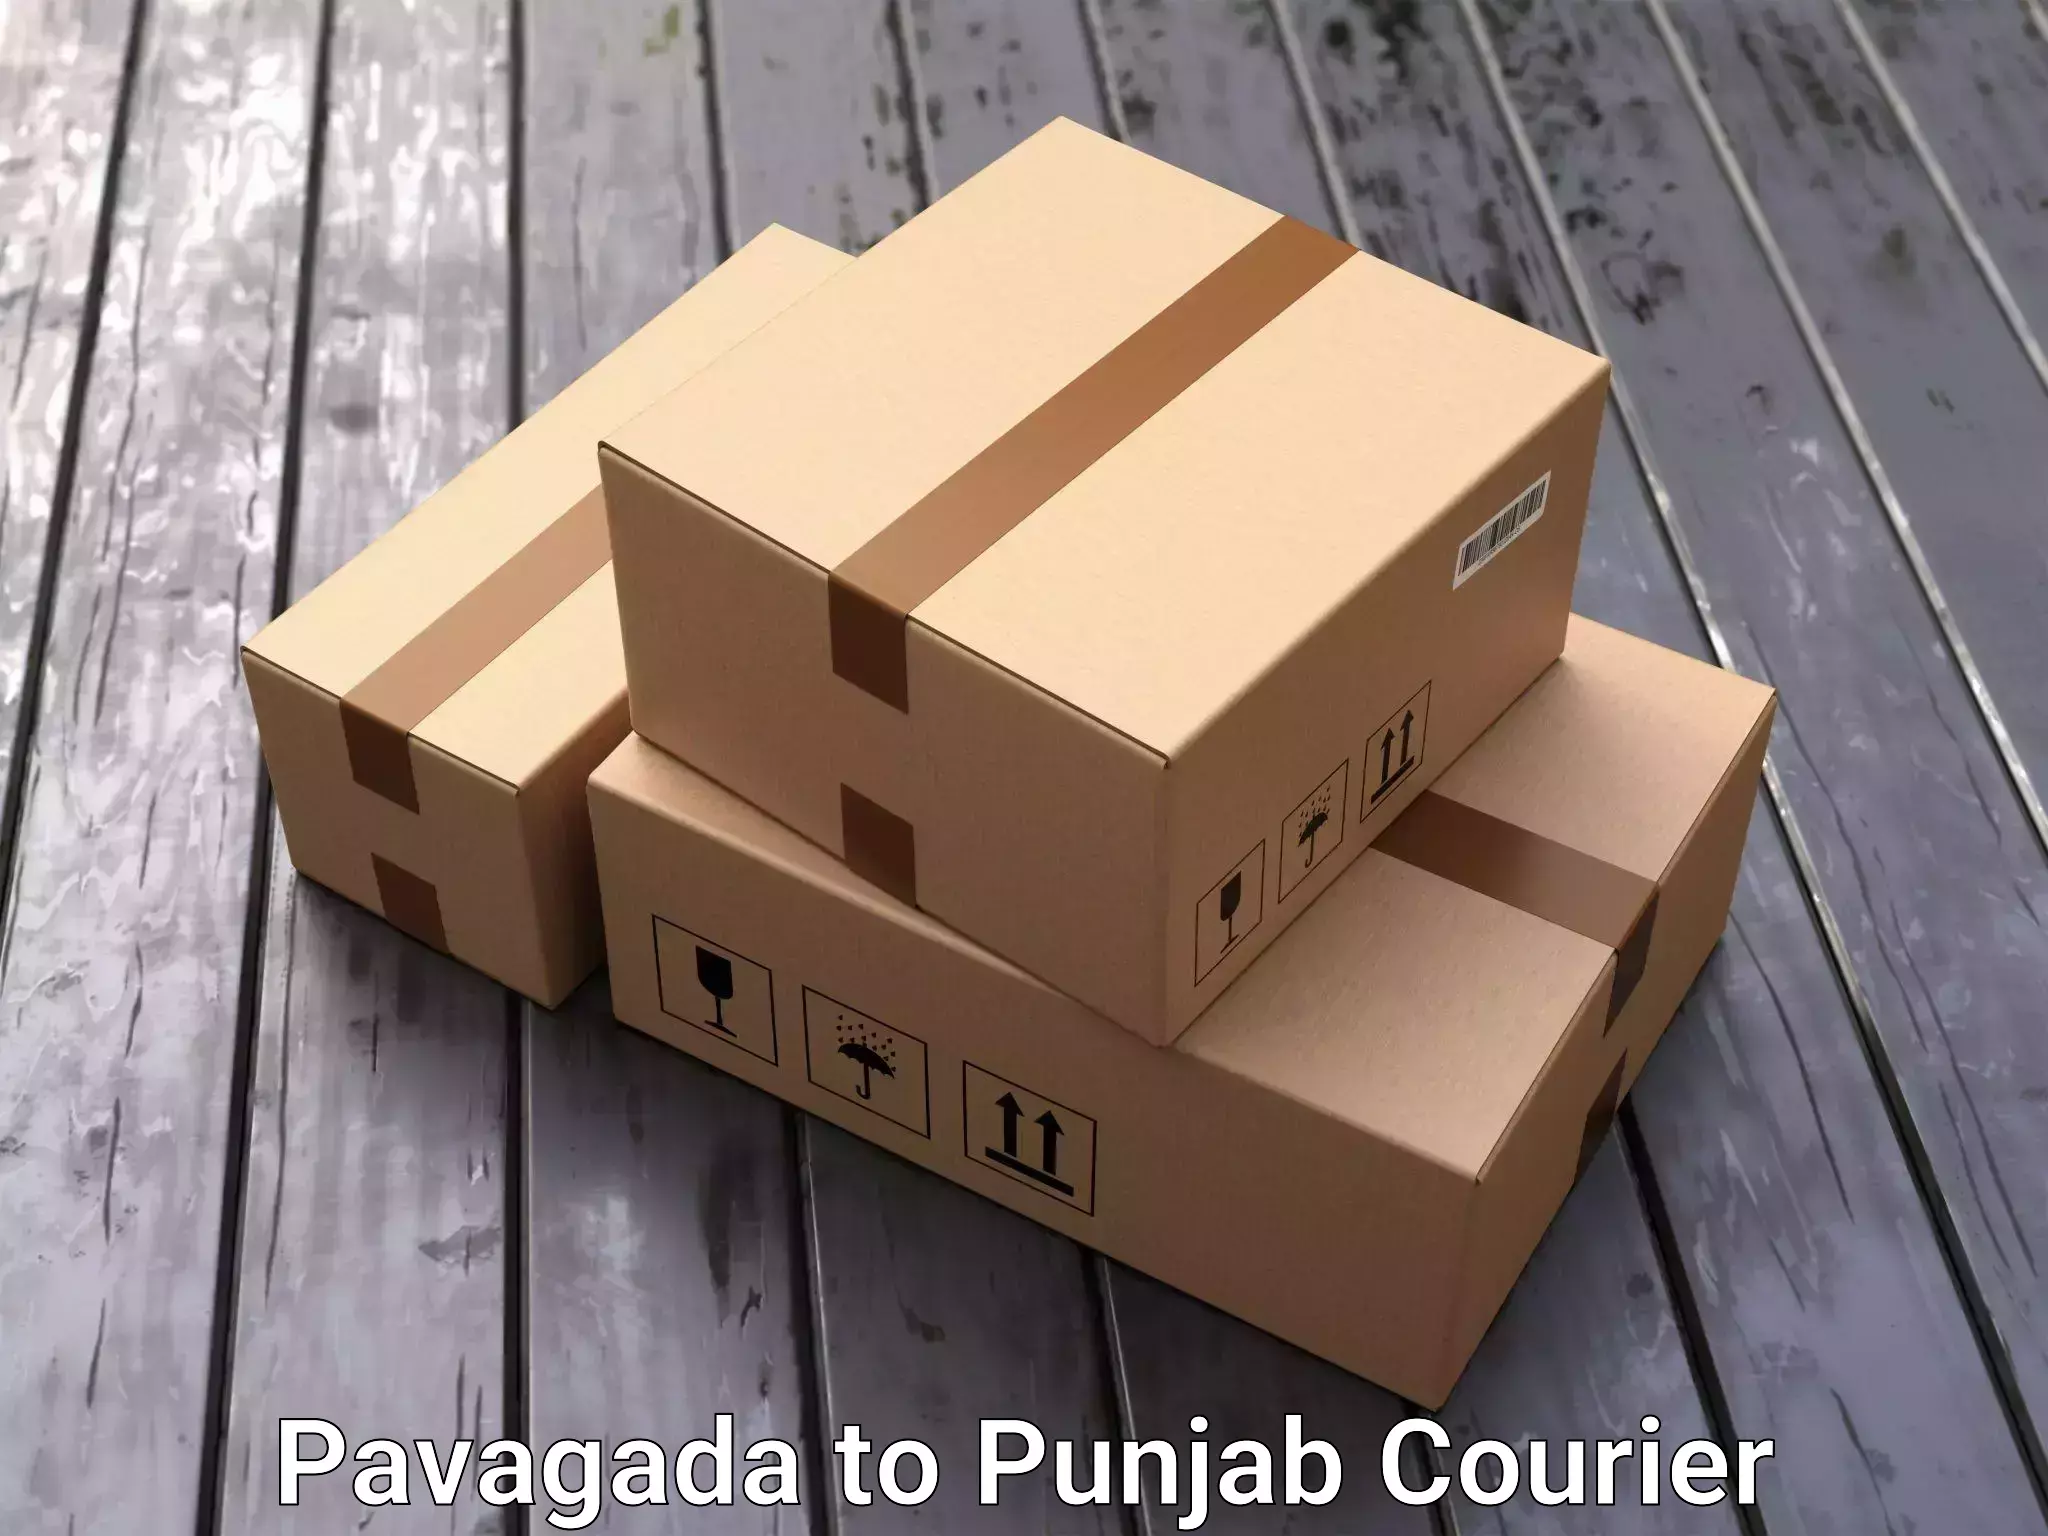 Furniture transport solutions Pavagada to Punjab